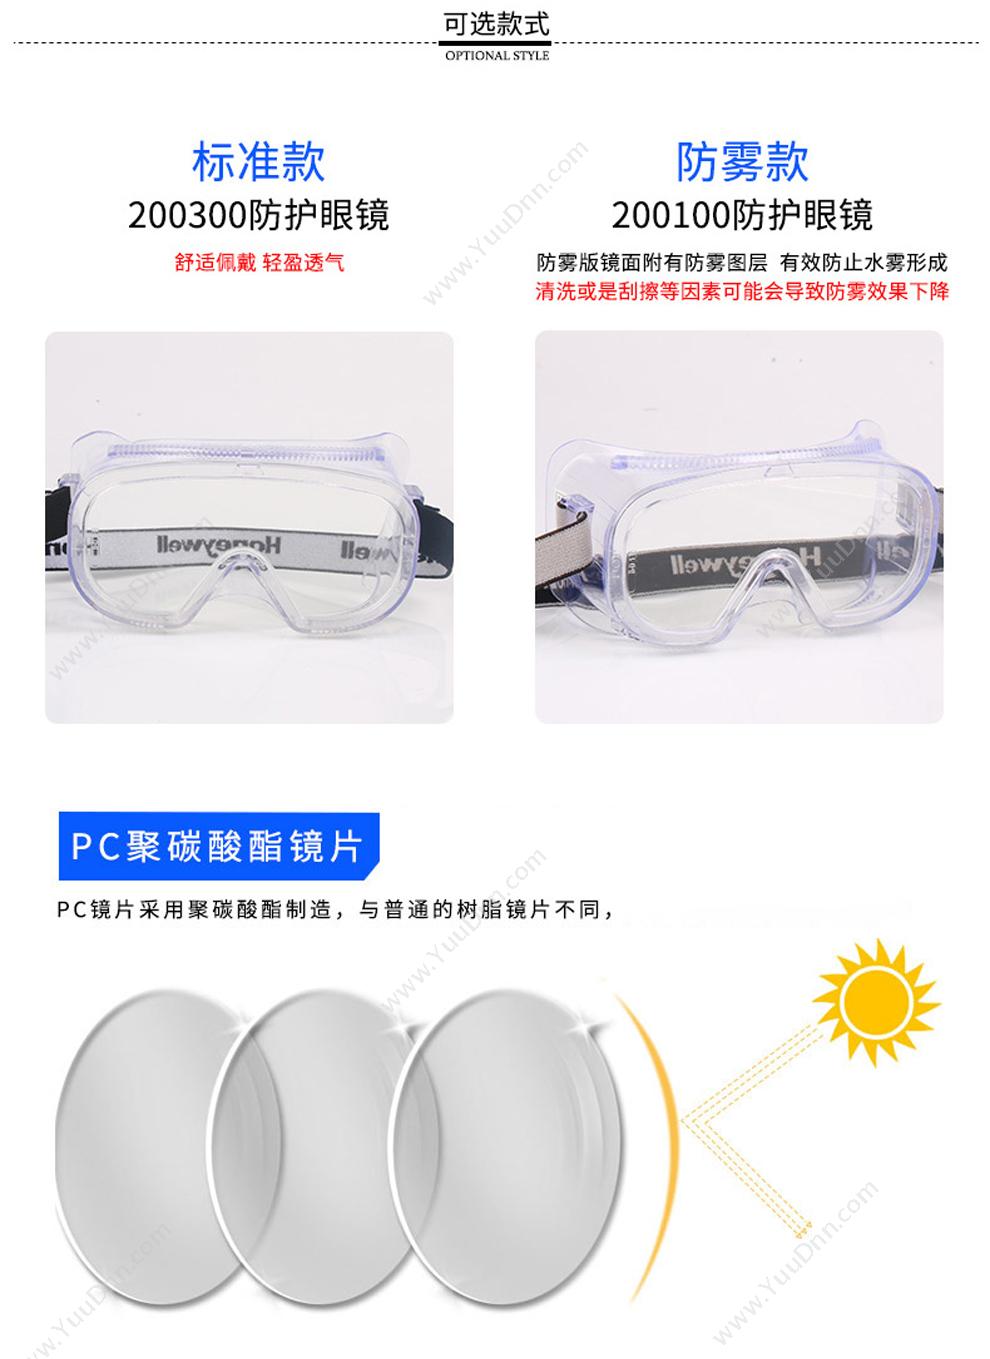 霍尼韦尔 Honeywell 200300 LG100A安全护目镜 不防雾 透明镜片 防护眼镜